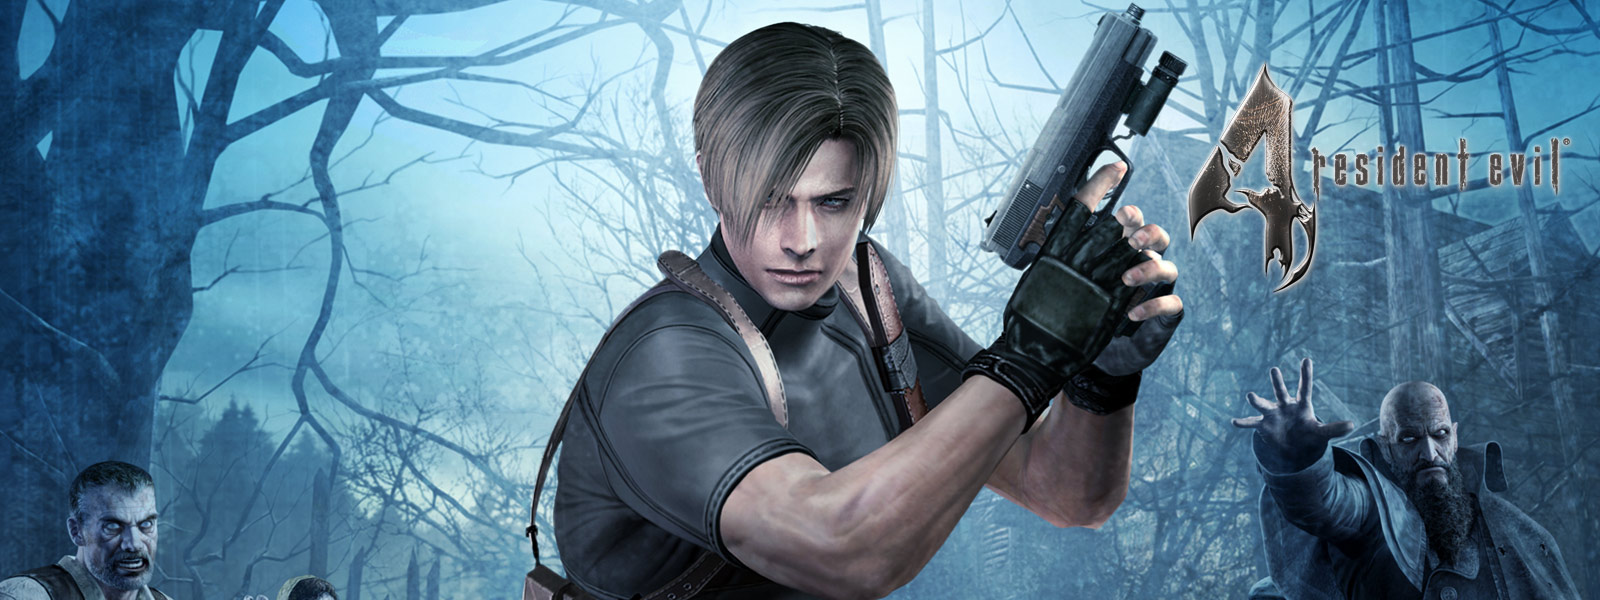 Resident Evil 4, personnage tenant un pistolet dans une forêt sombre entourée de zombies